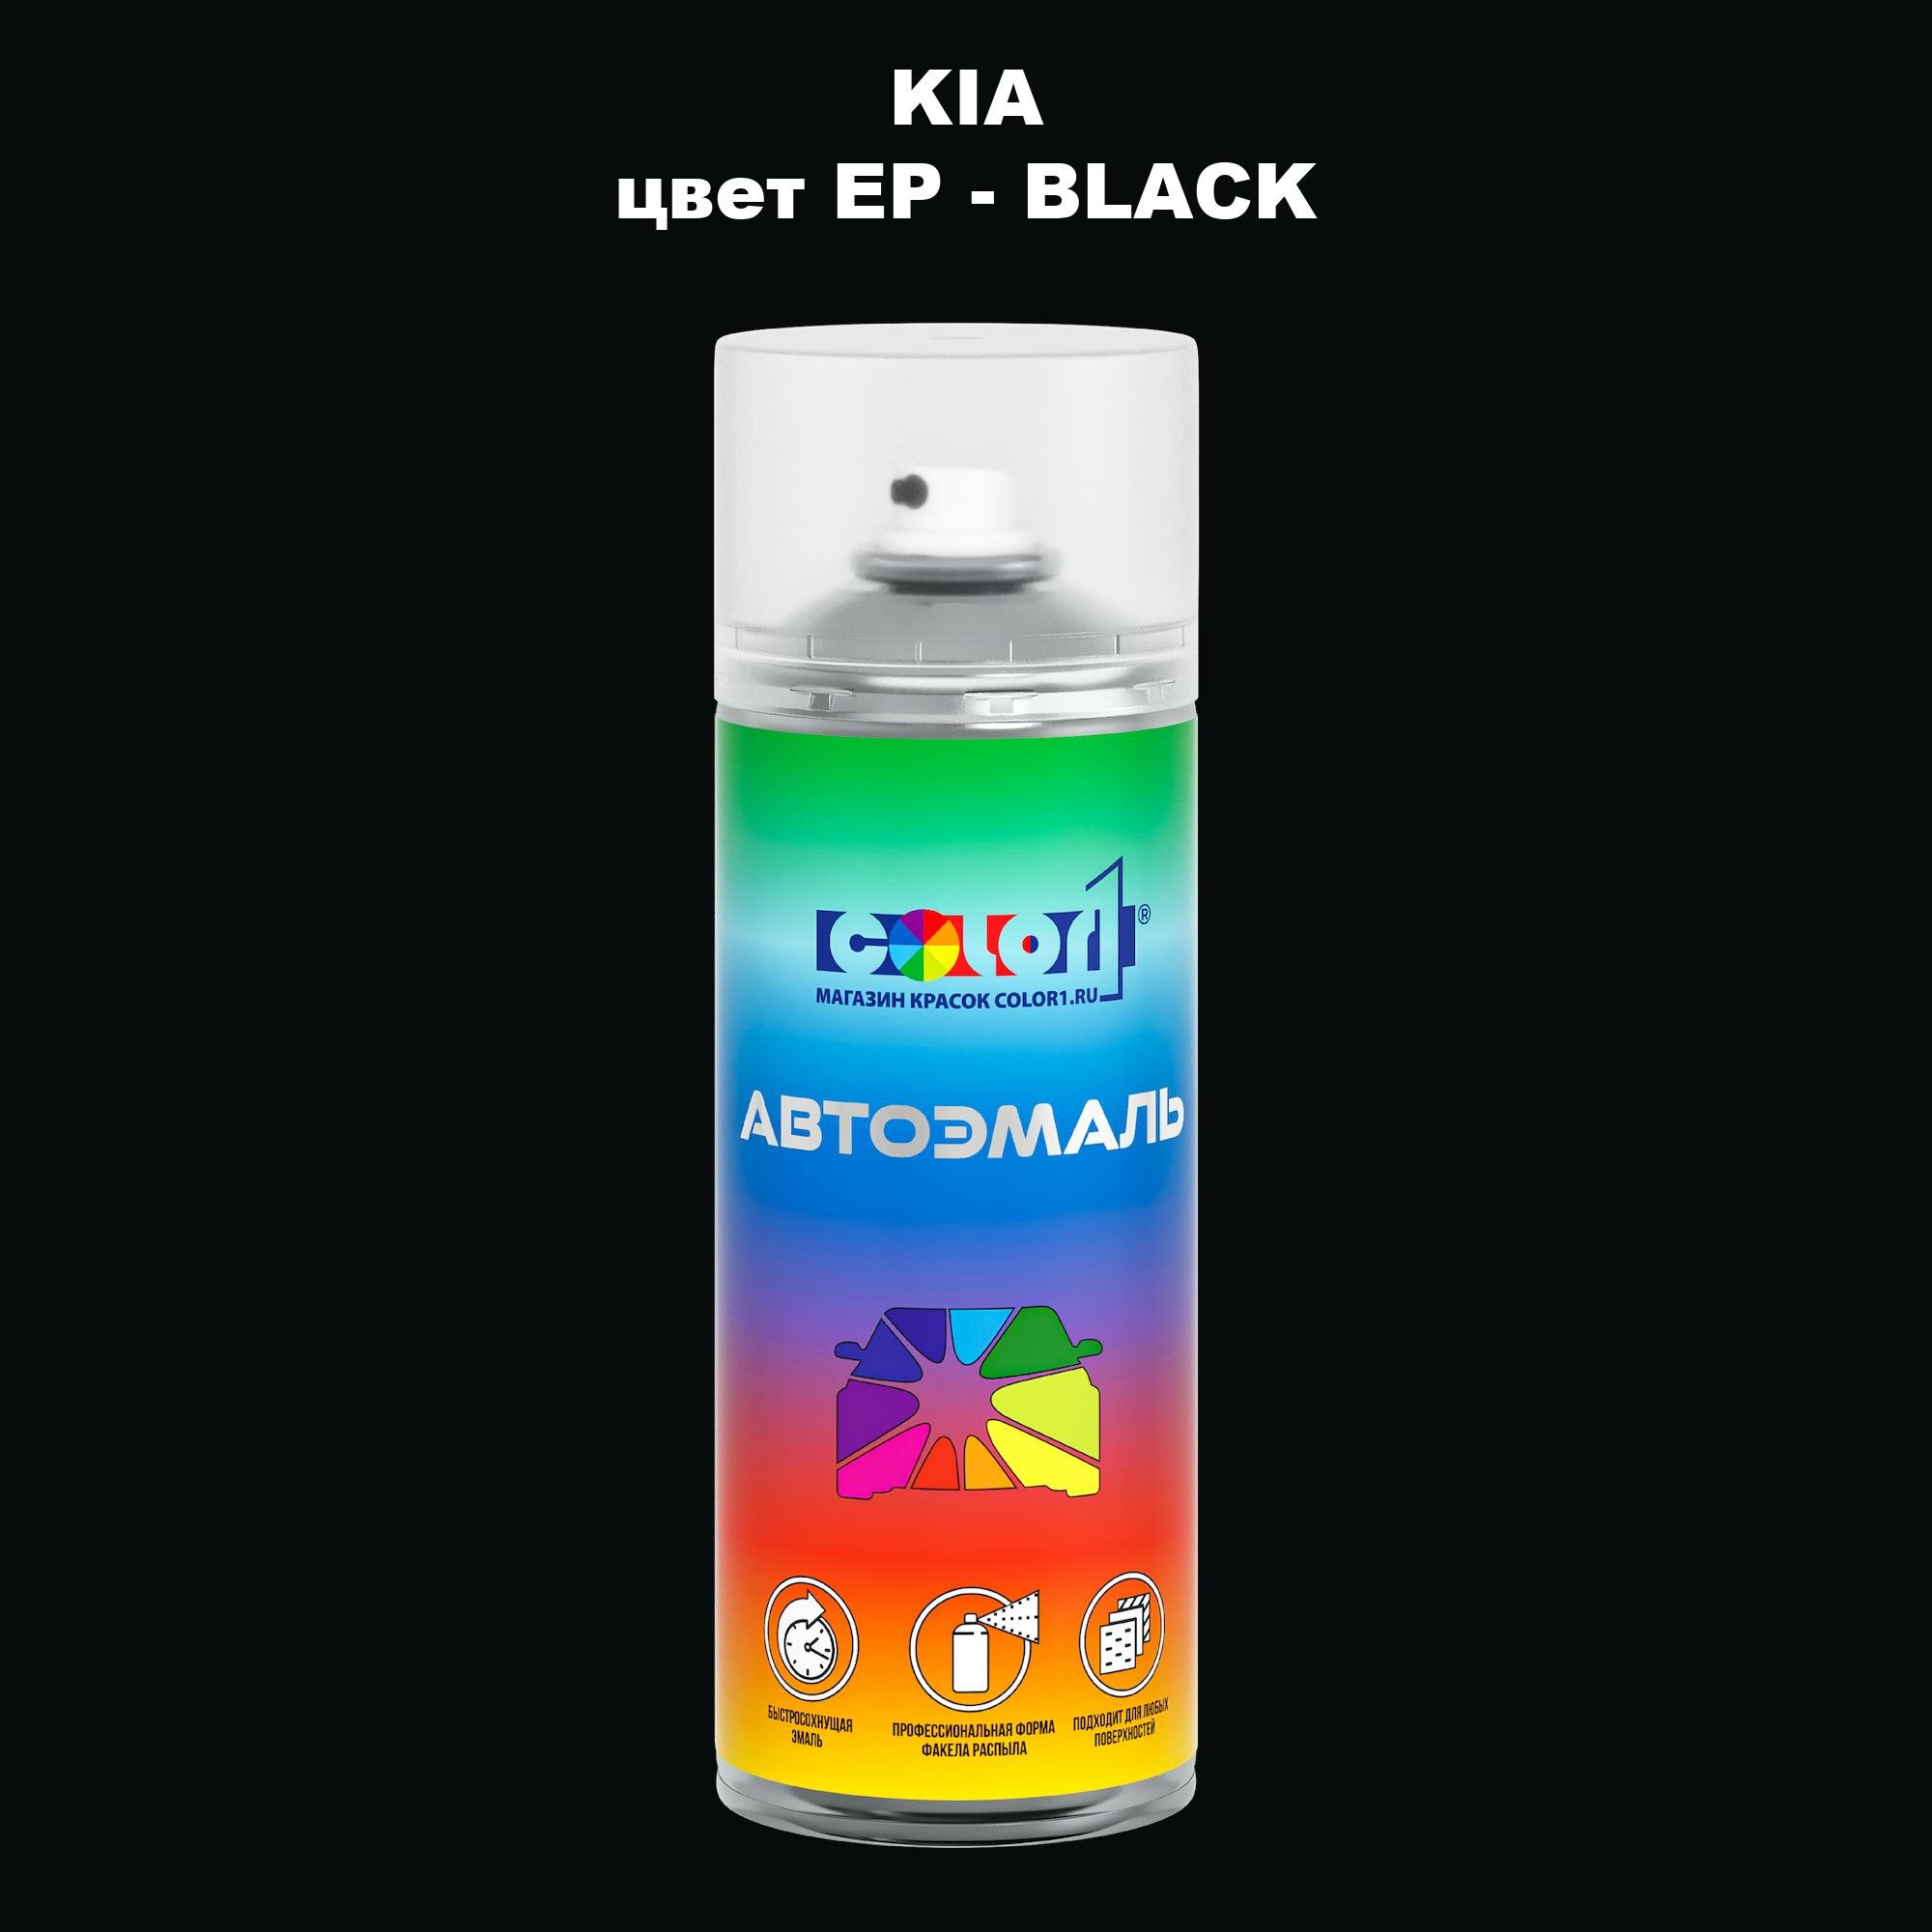 Аэрозольная краска COLOR1 для KIA, цвет EP - BLACK